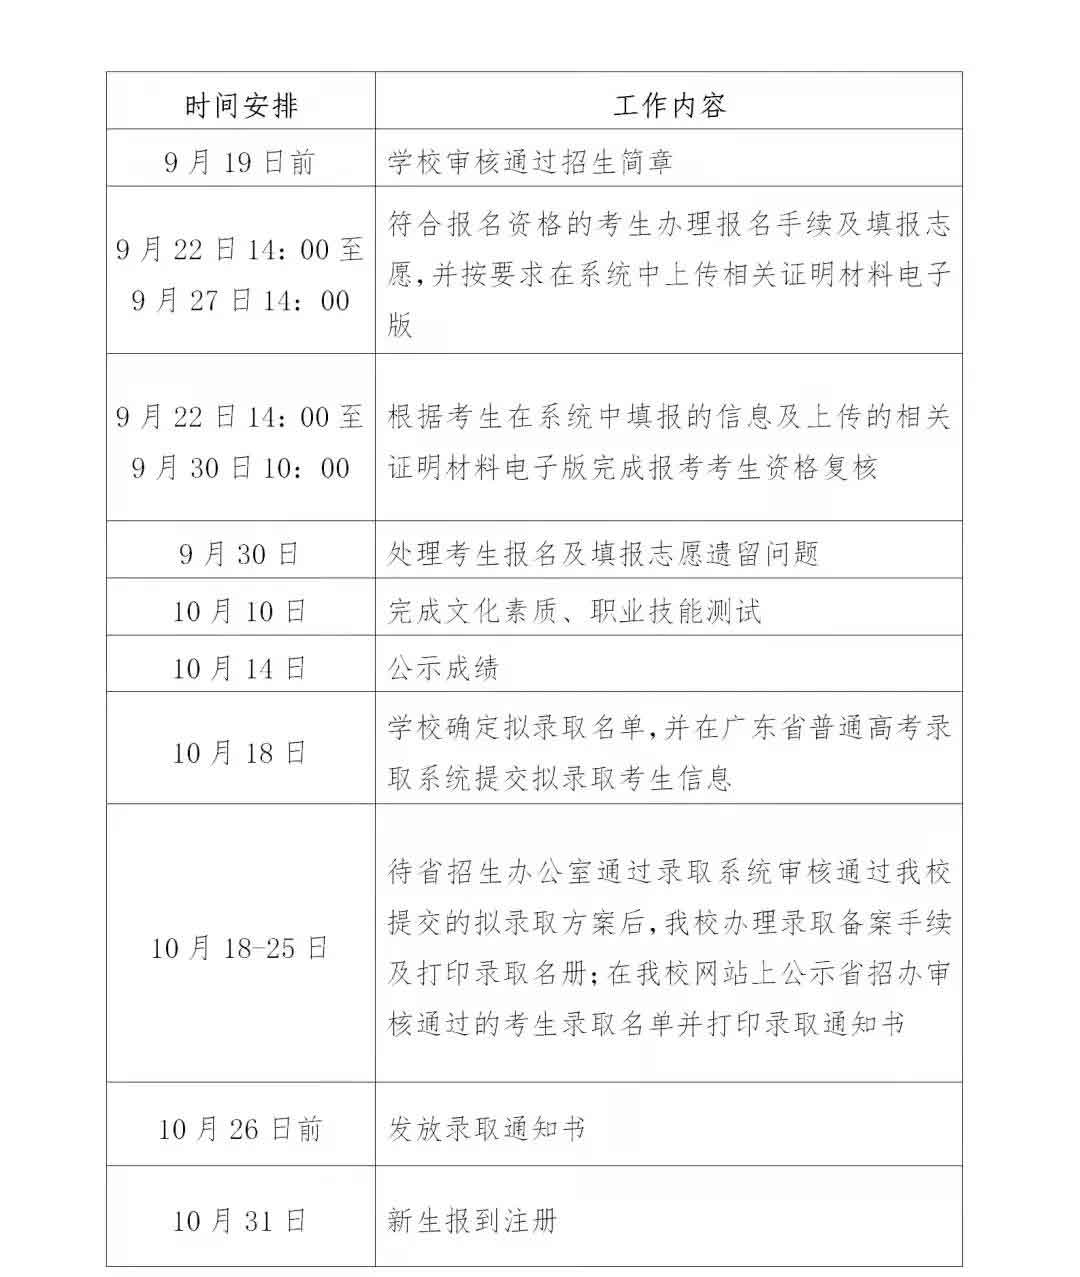 2021年惠州经济职业技术学院高职扩招专项行动招生简章(图3)